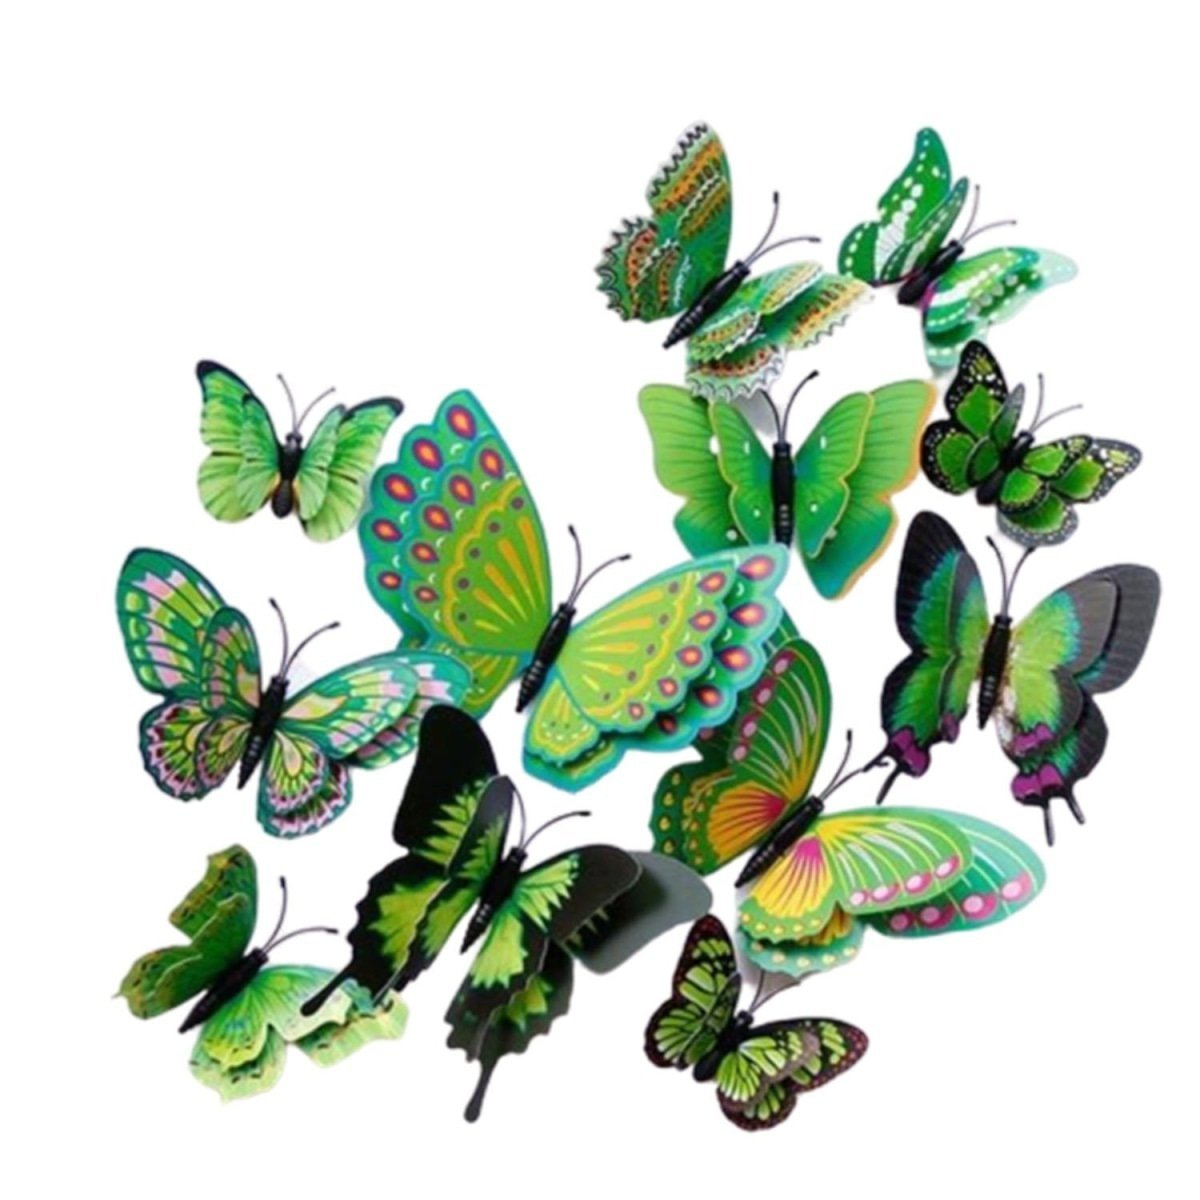 12x Double Layer 3D Butterfly Wall Sticker Home Decor Butterflies Fridge Magnet - Green - - Asia Sell